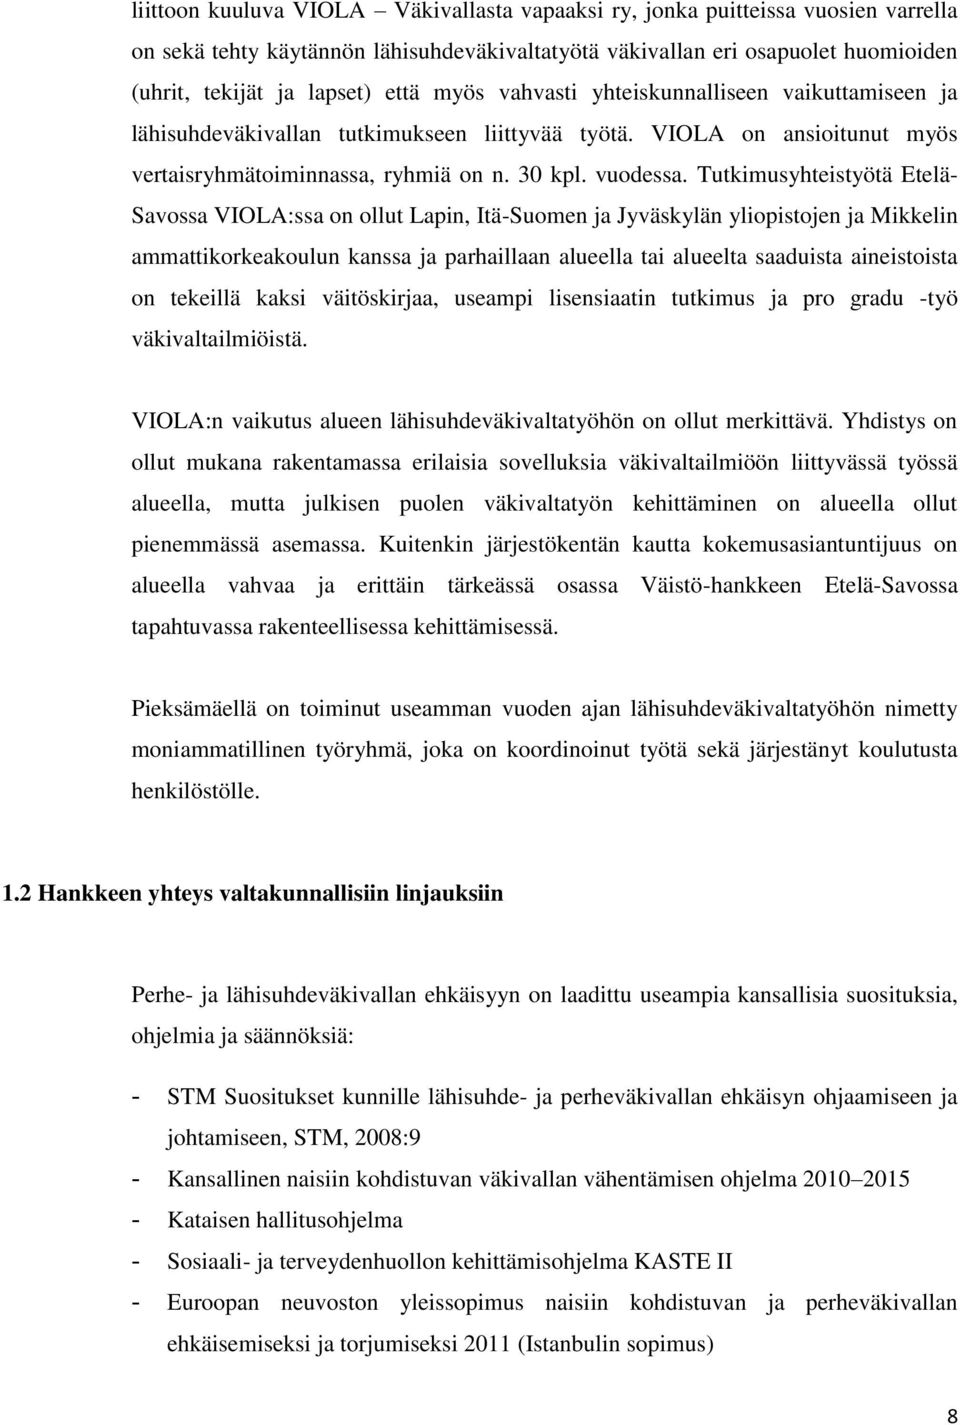 Tutkimusyhteistyötä Etelä- Savossa VIOLA:ssa on ollut Lapin, Itä-Suomen ja Jyväskylän yliopistojen ja Mikkelin ammattikorkeakoulun kanssa ja parhaillaan alueella tai alueelta saaduista aineistoista